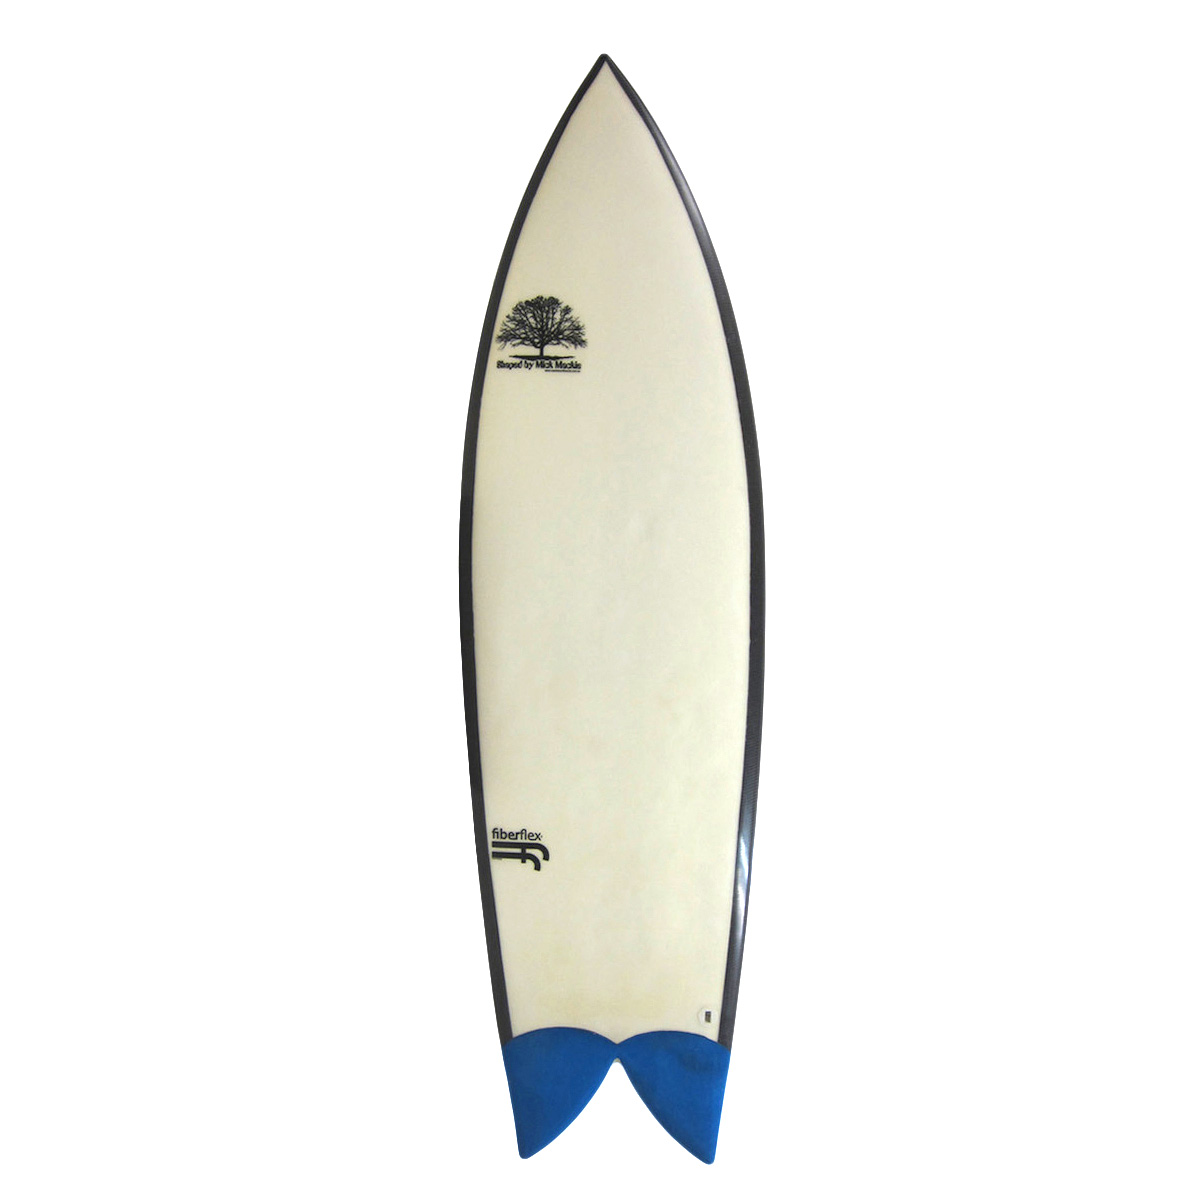 Mick Mackie Surfboards / Flextail Fish 5`10 Fiberflex